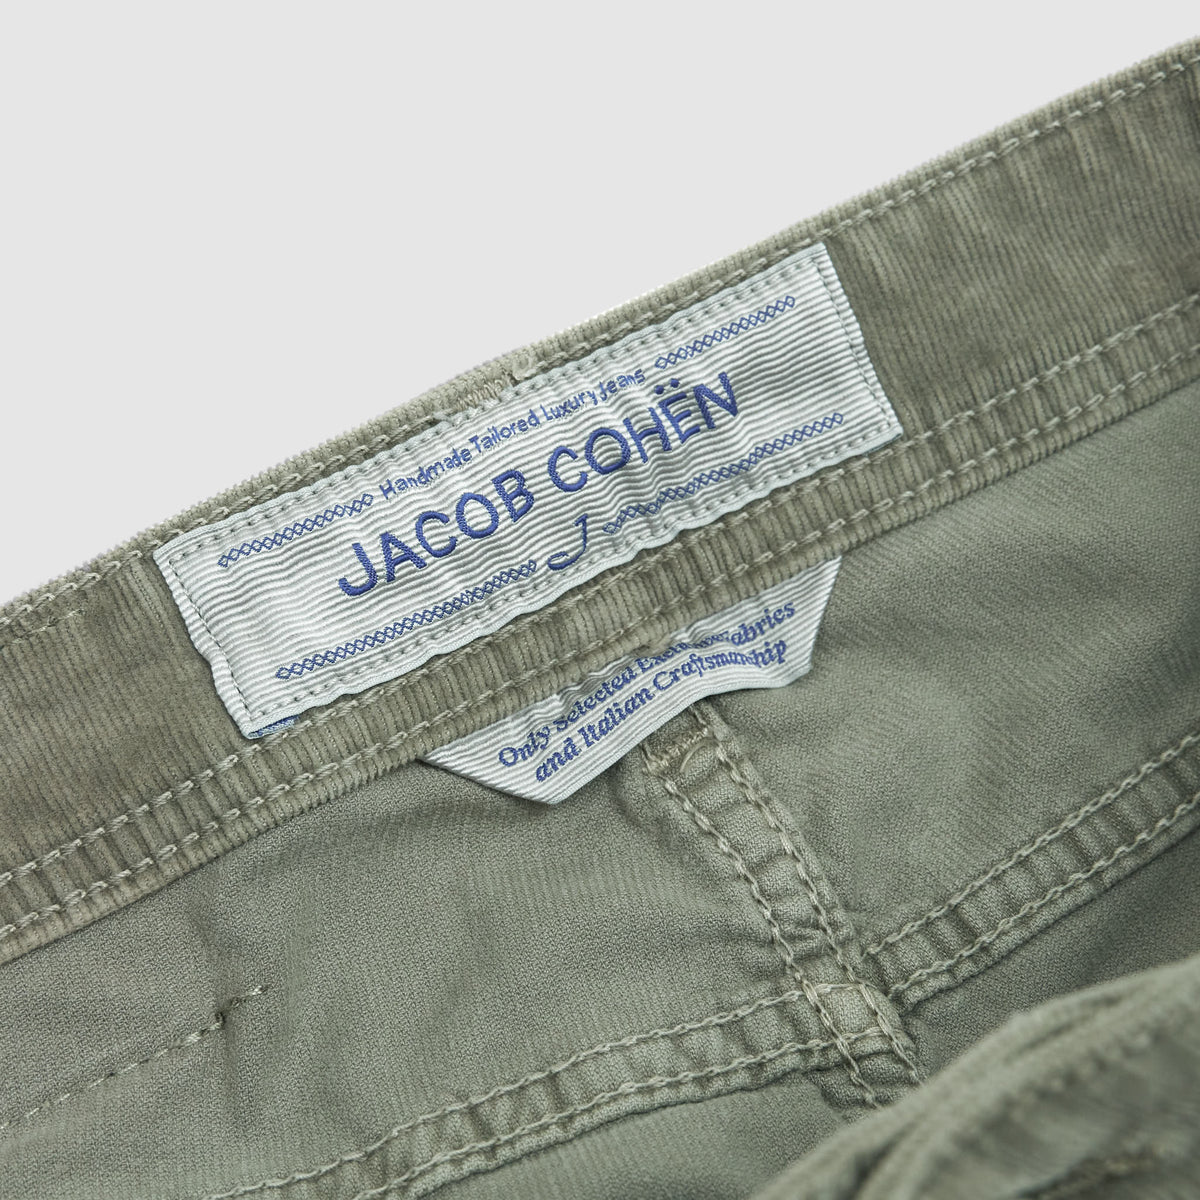 Jacob Cohen Luxury 5 Pocket Corduroy Pants